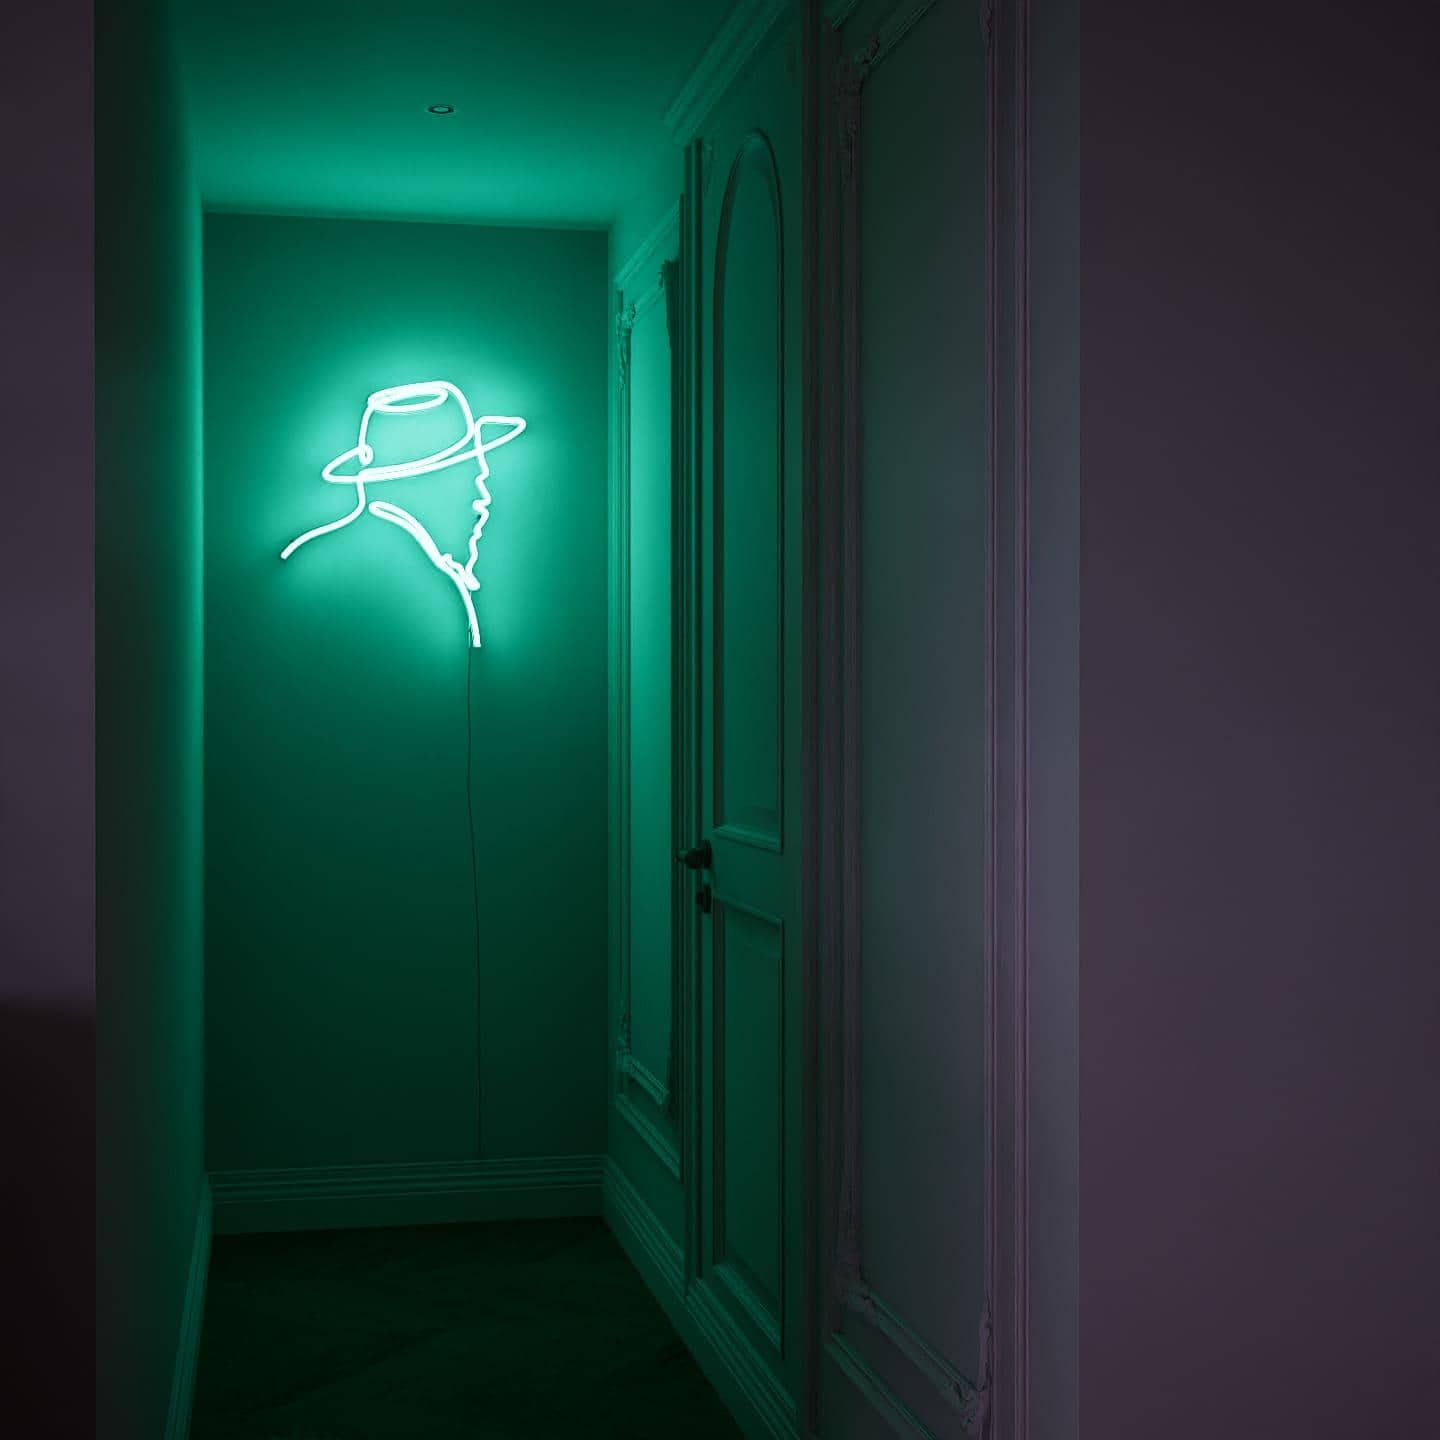 custom-neon-sign-moder-nismar-tistseries-Pcass-odayForest-Green 